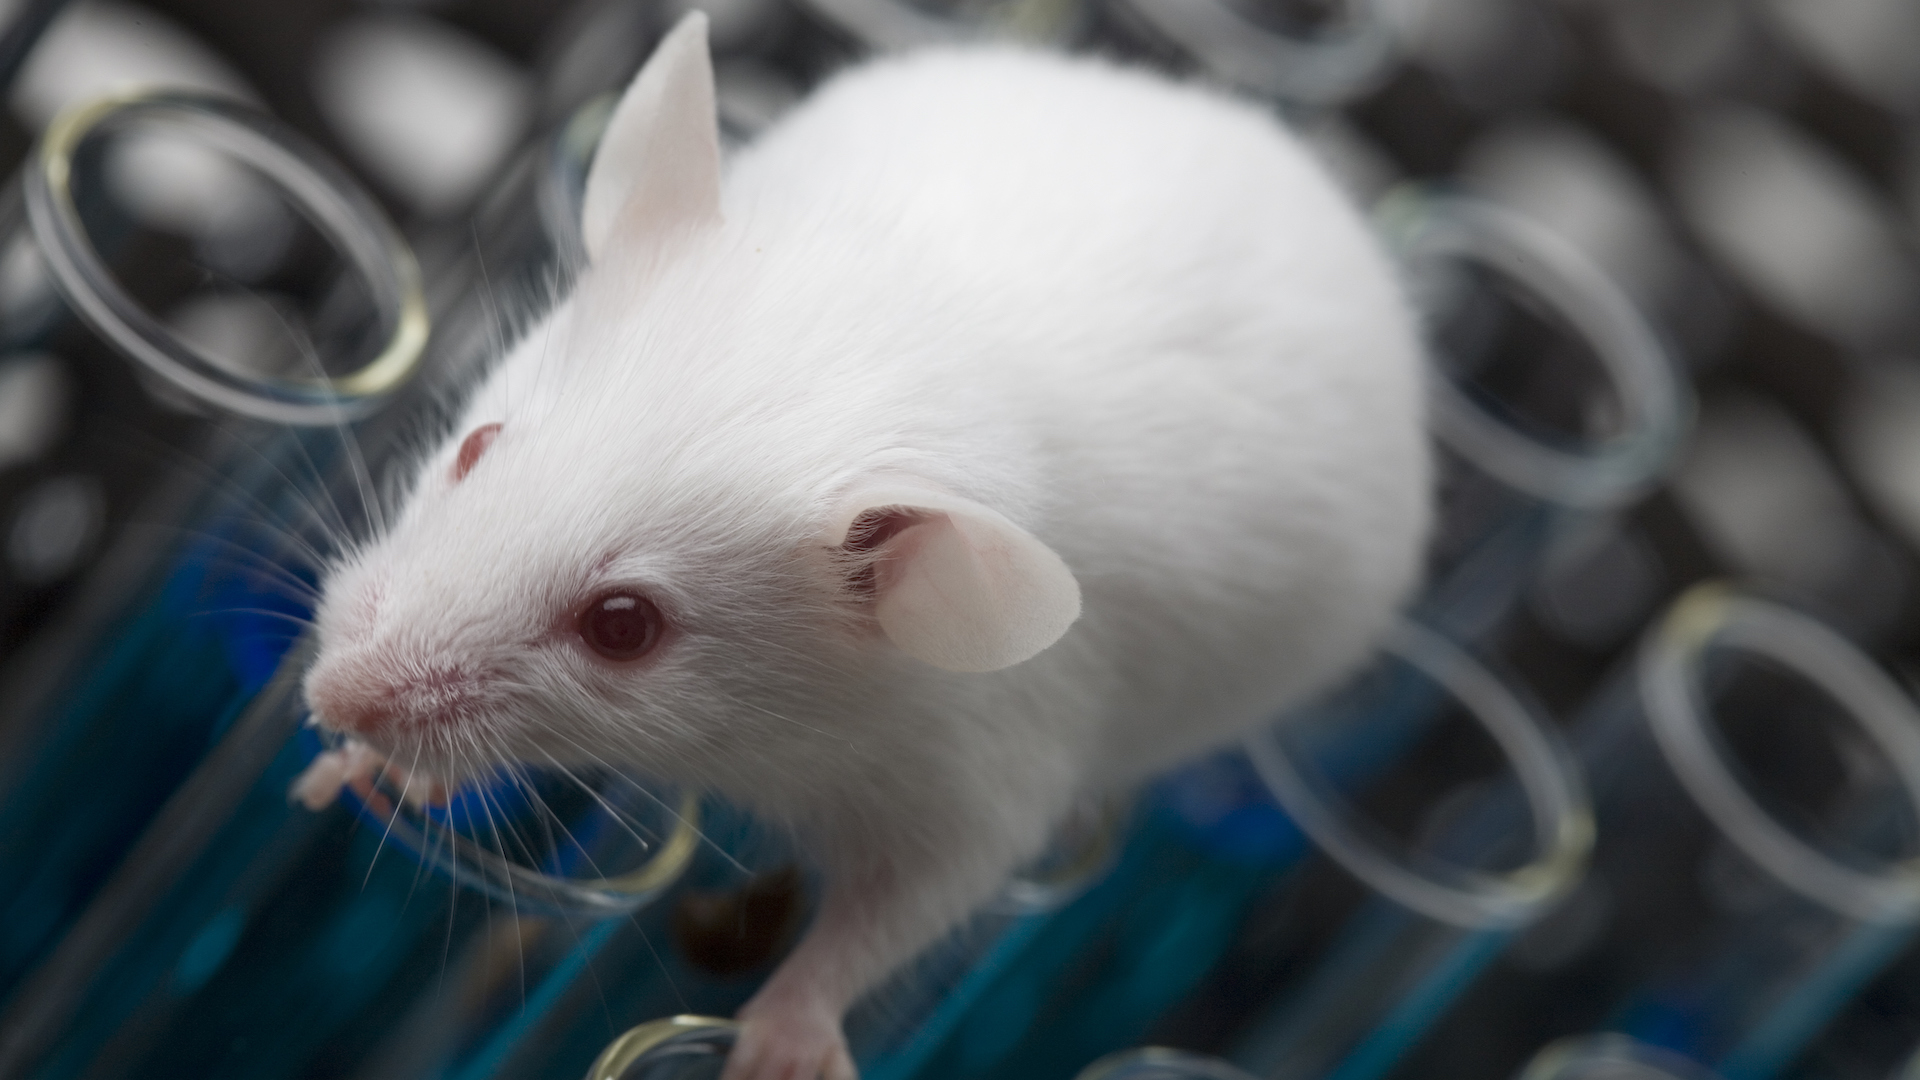 Uma foto de um rato de laboratório albino sentado em cima de tubos de ensaio